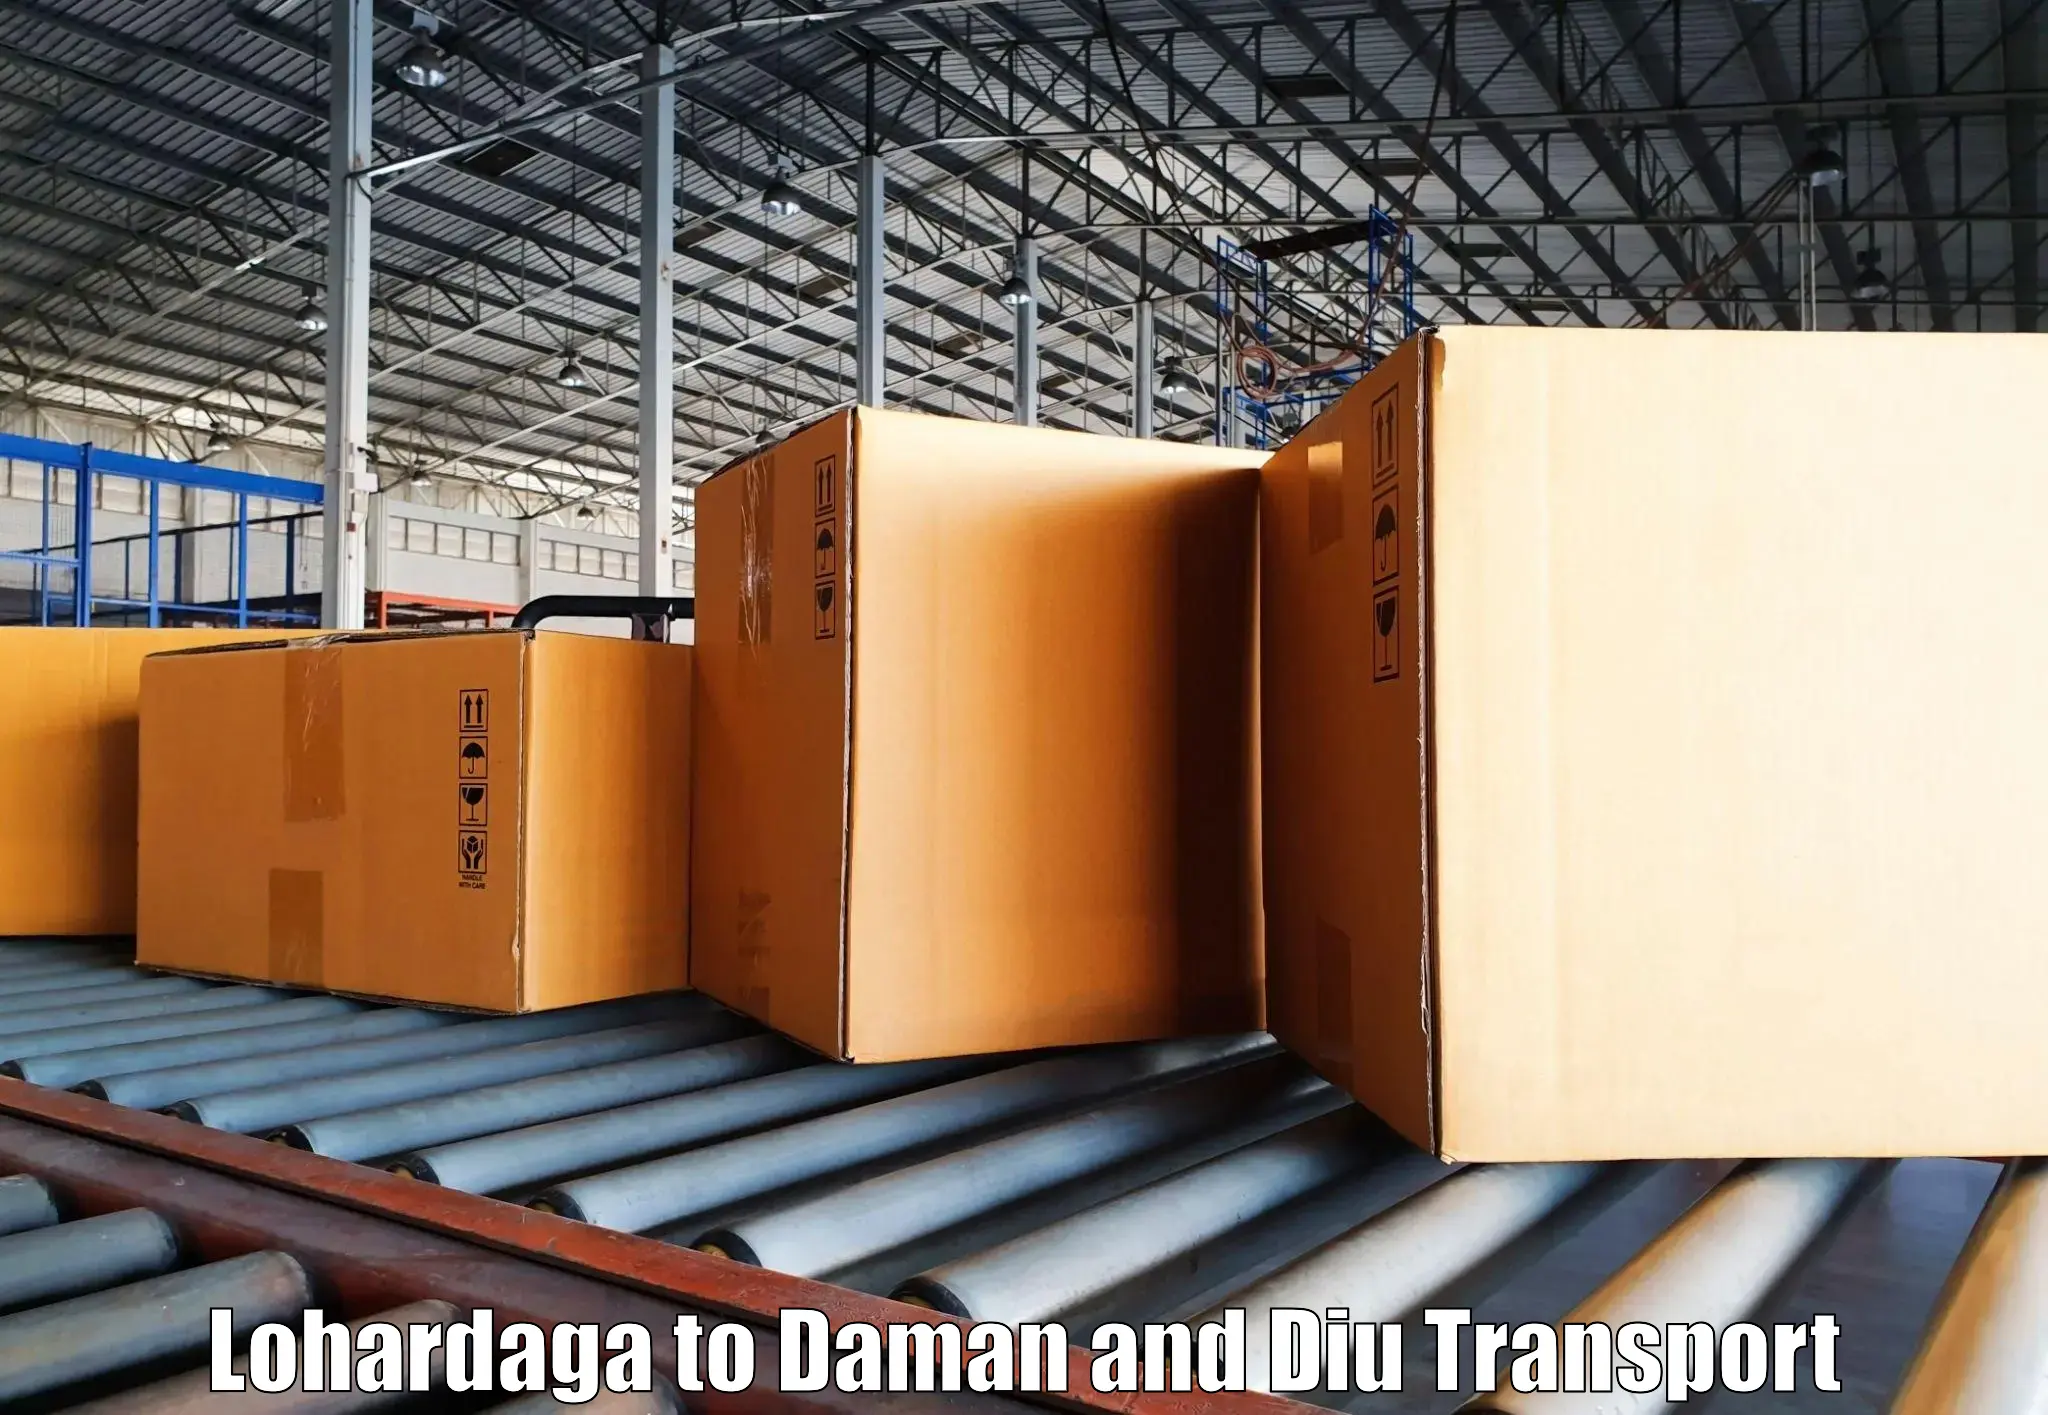 Two wheeler transport services Lohardaga to Daman and Diu